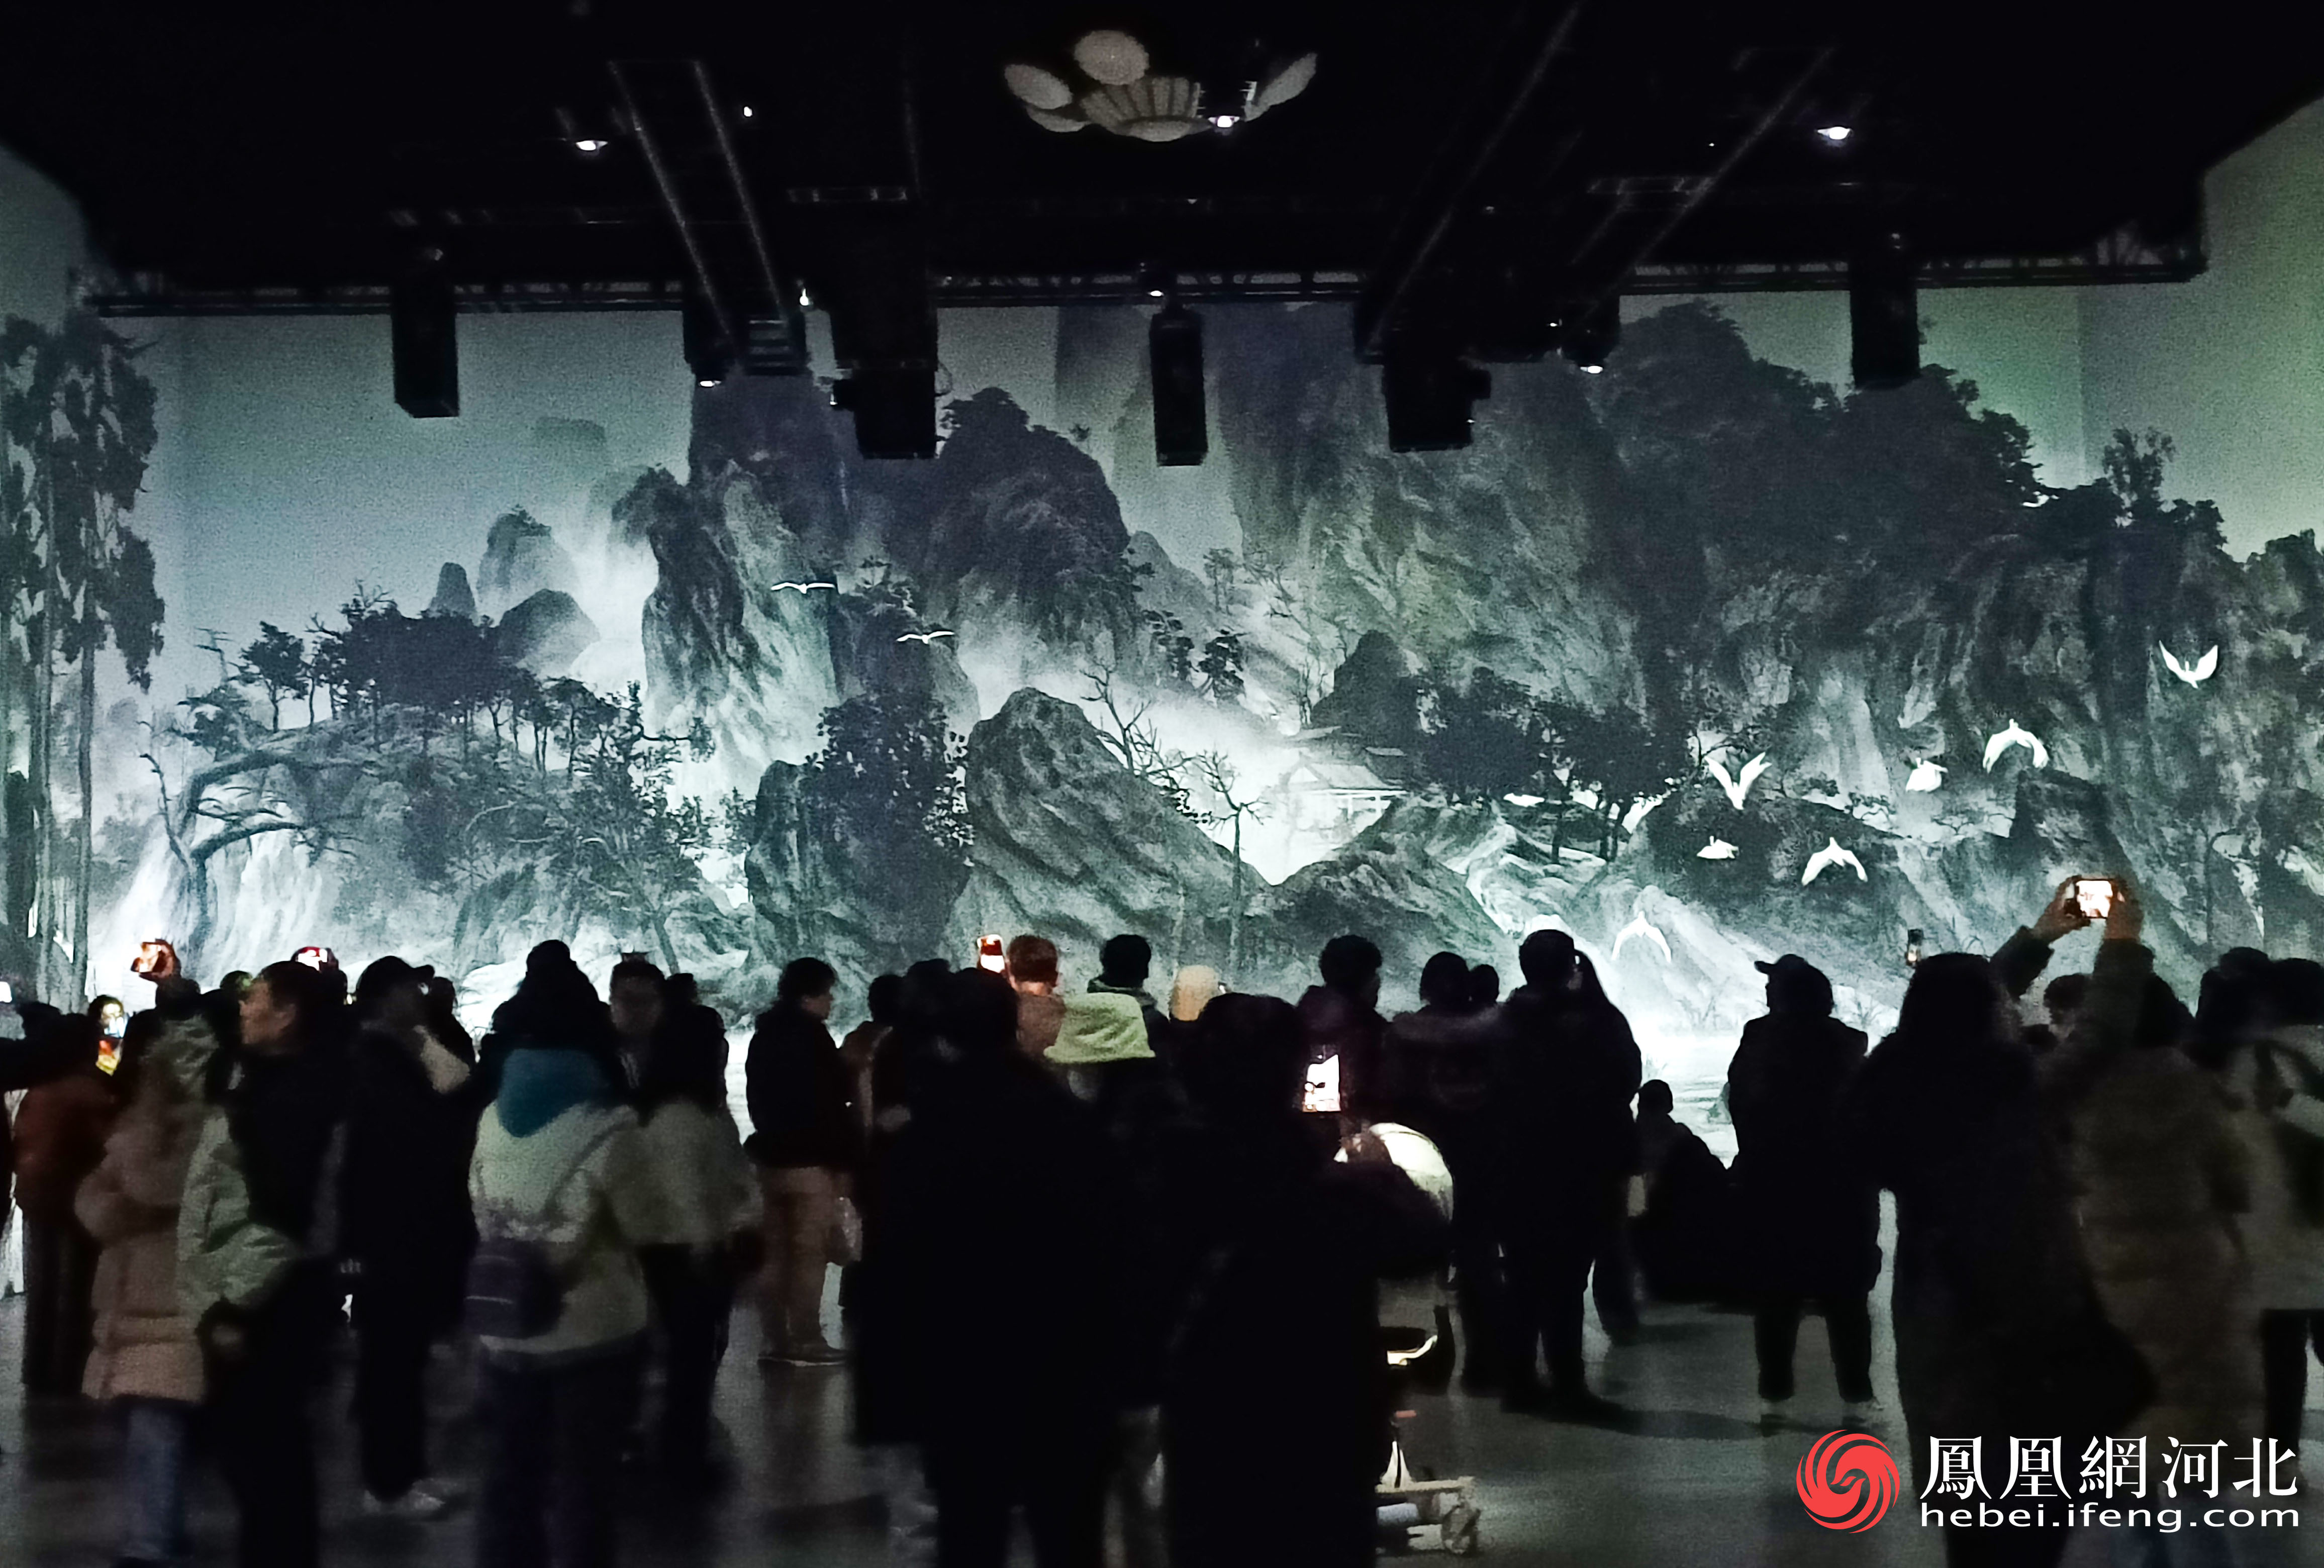 “光影丹青”沉浸式体验区现场聚集了大量参观者在此欣赏。